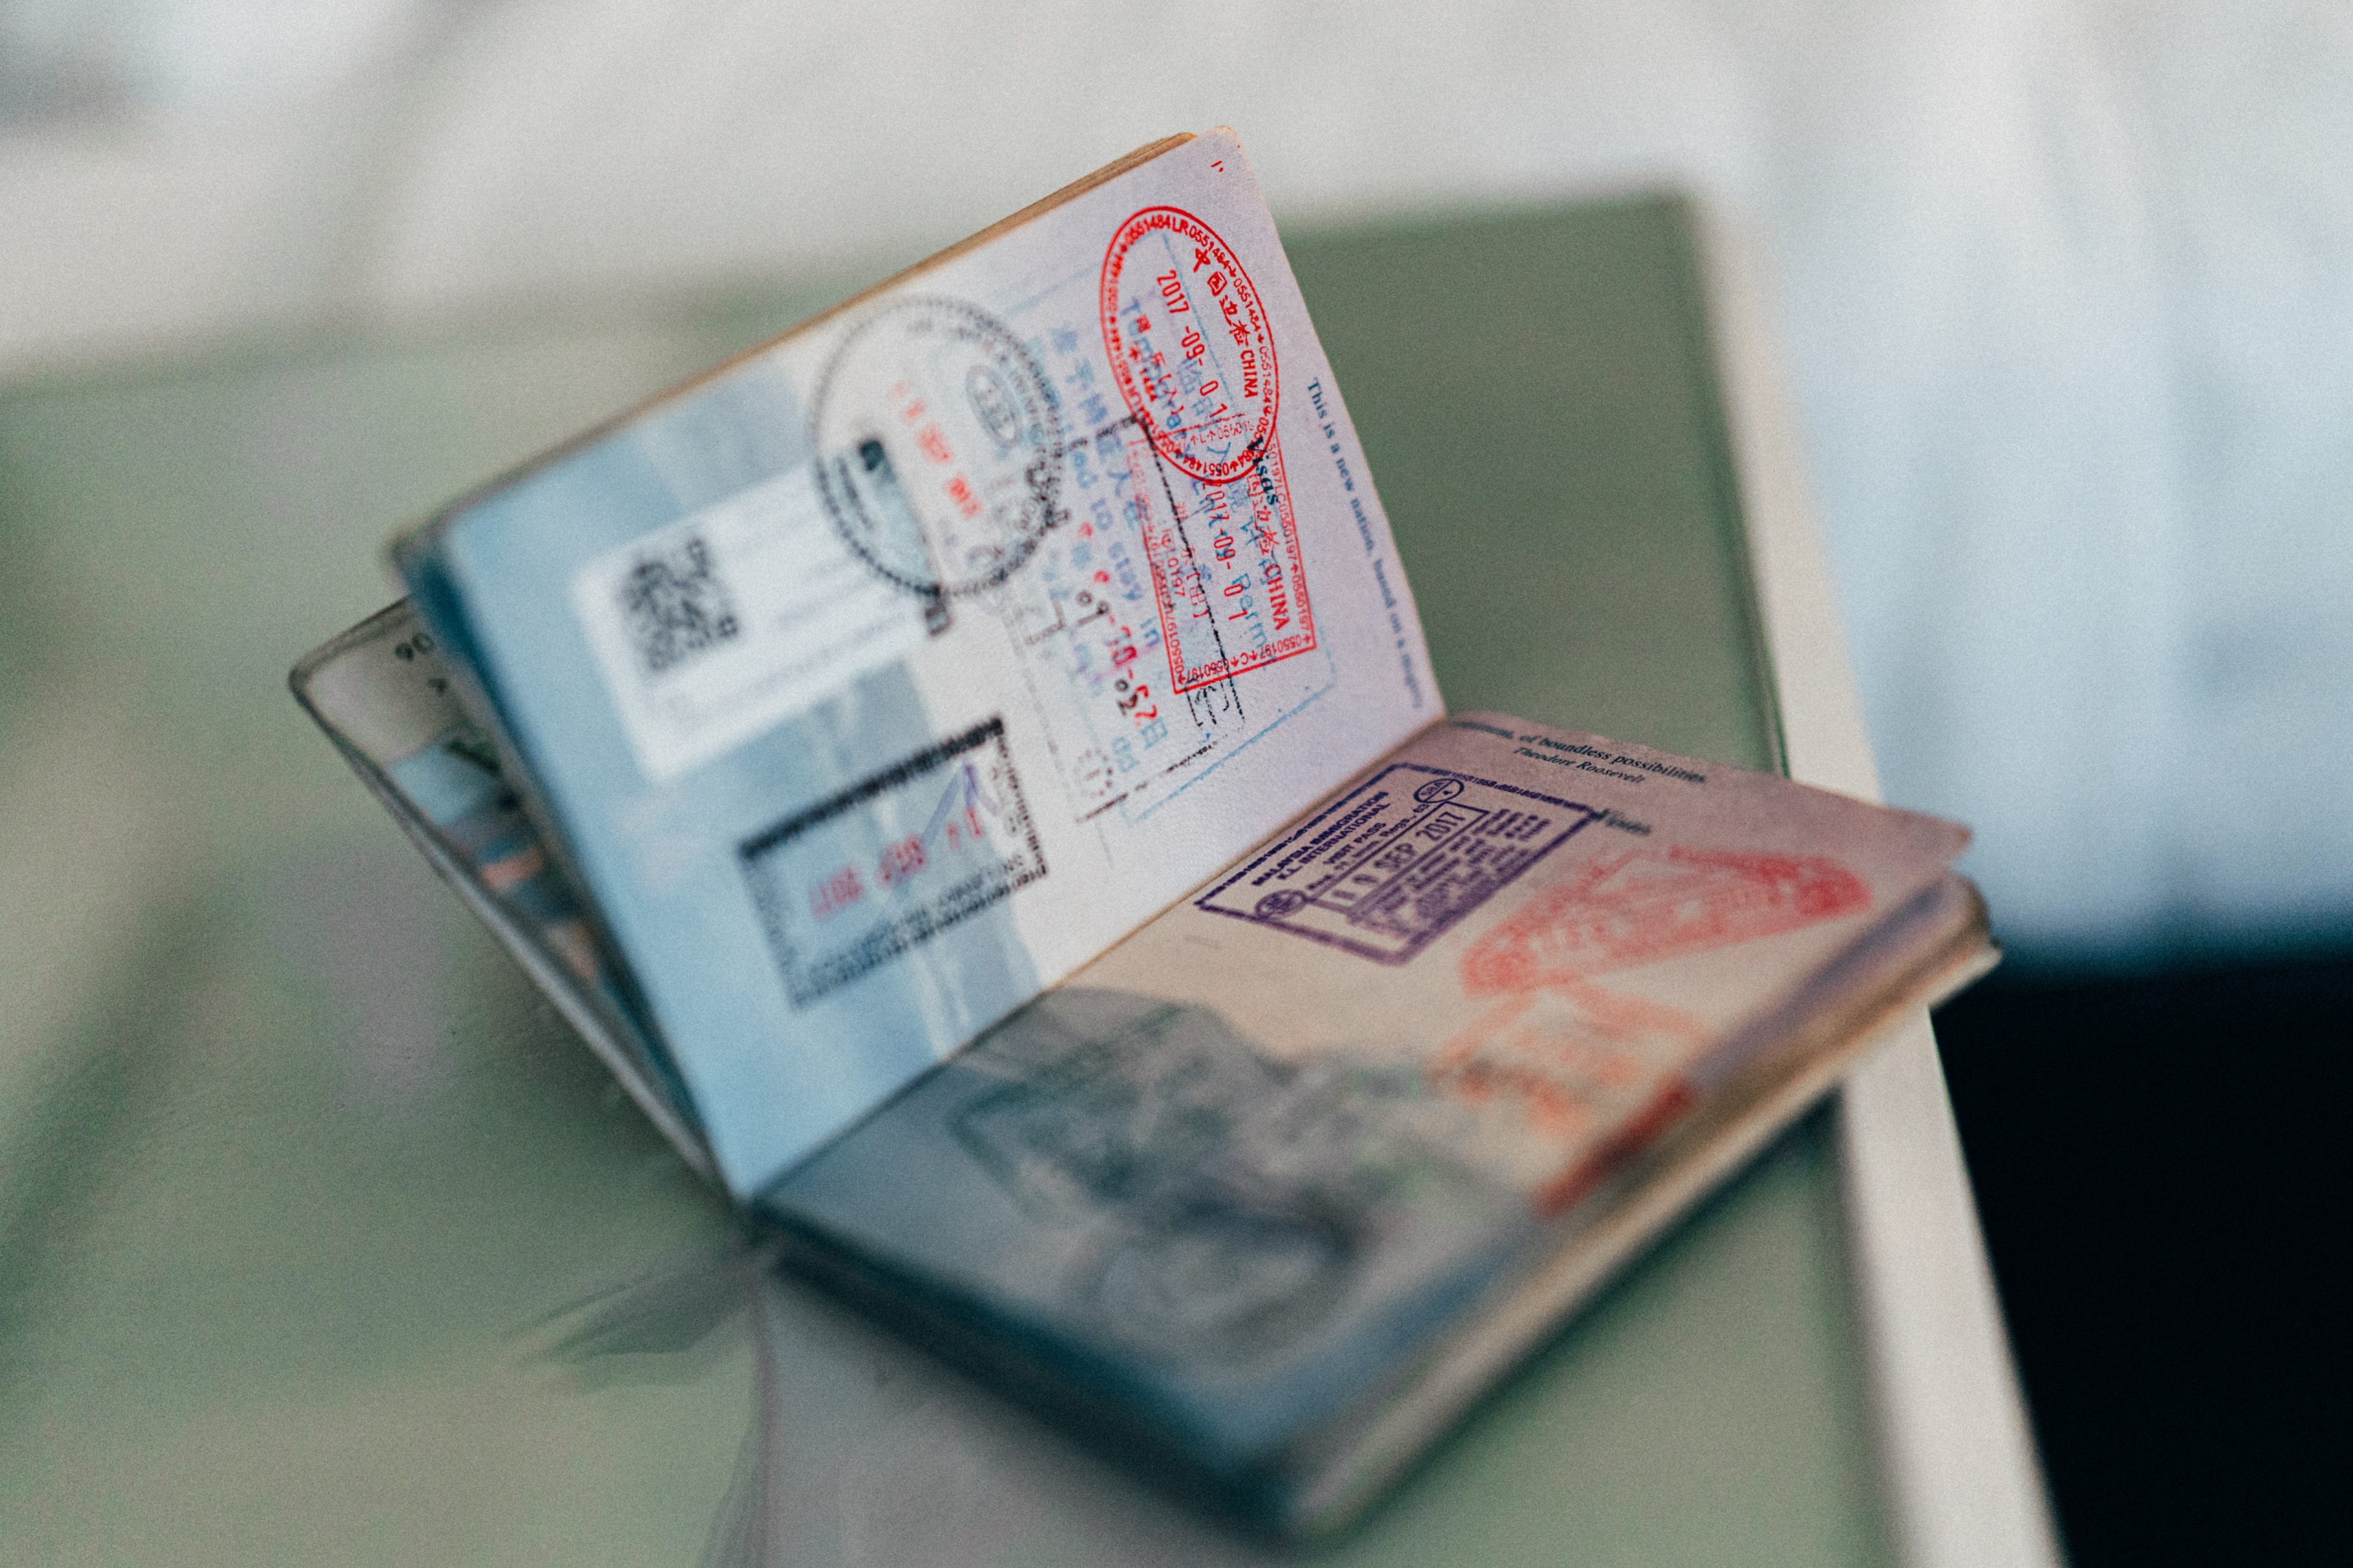 Estos son los colores de los pasaportes y su significado ¿Cuál tiene usted?